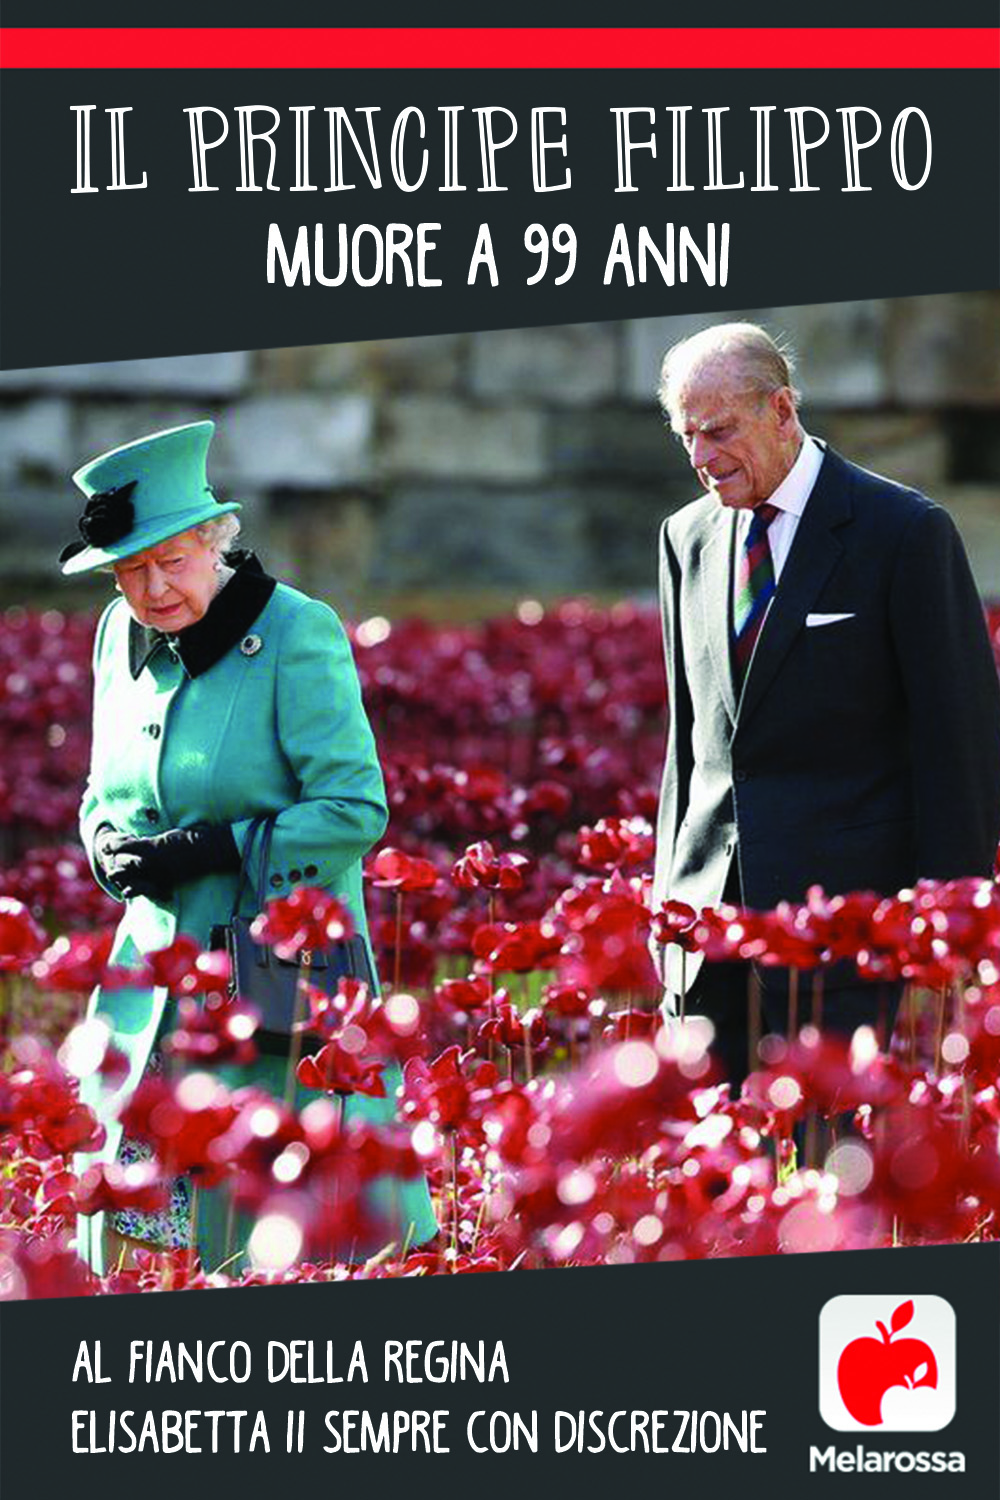 Il principe Filippo muore a 99 anni, al fianco della regina Elisabetta II sempre con discrezione